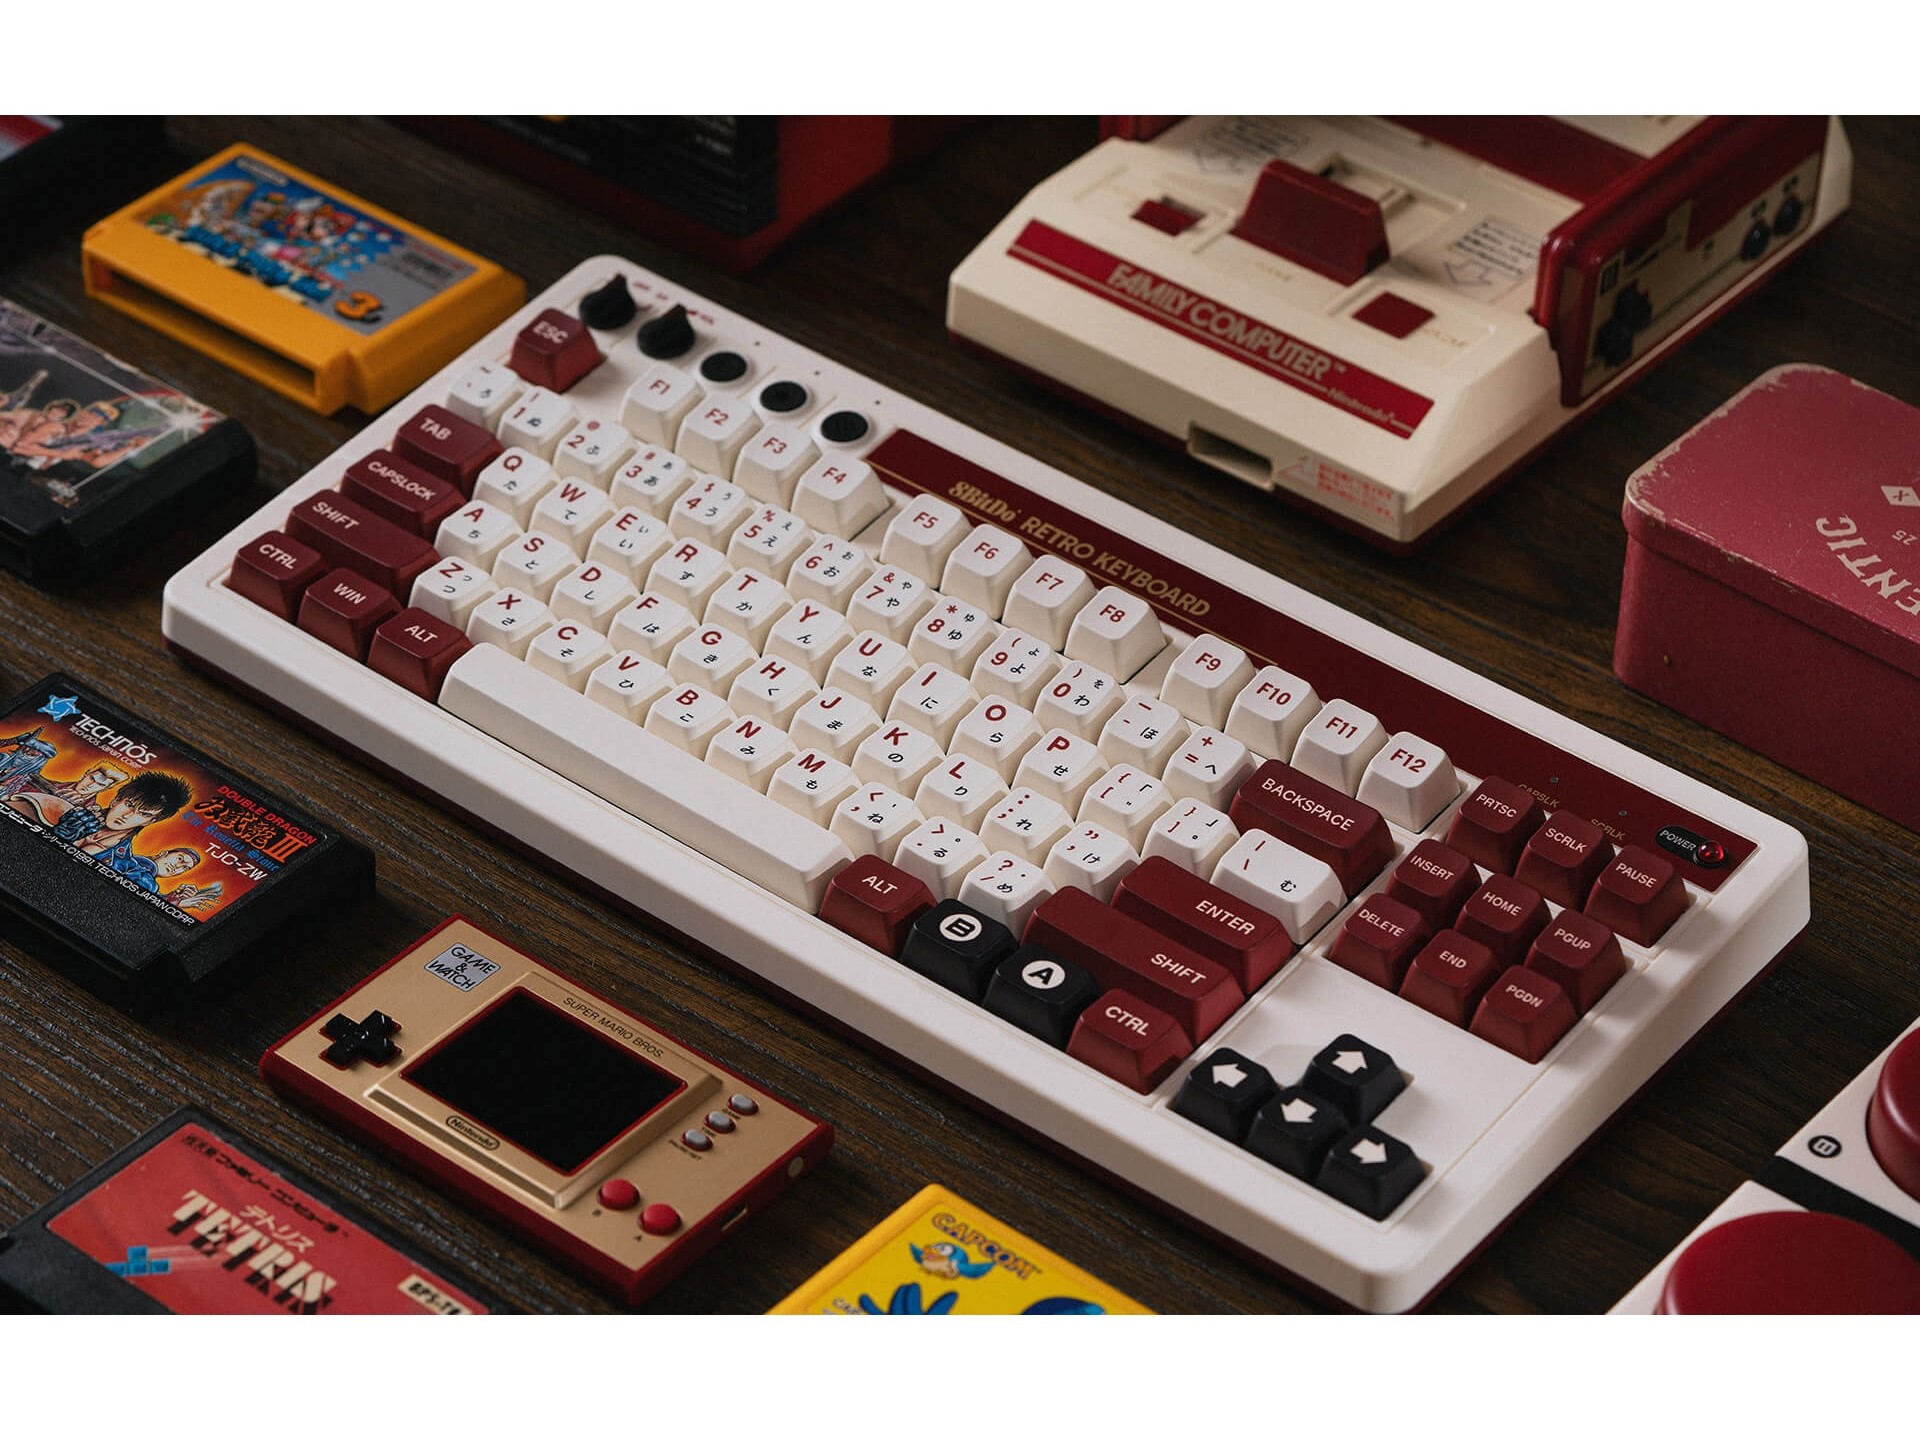 ファミコン風デザインのメカニカルキーボード「8BitDo Retro Mechanical Keyboard」 - エルミタージュ秋葉原